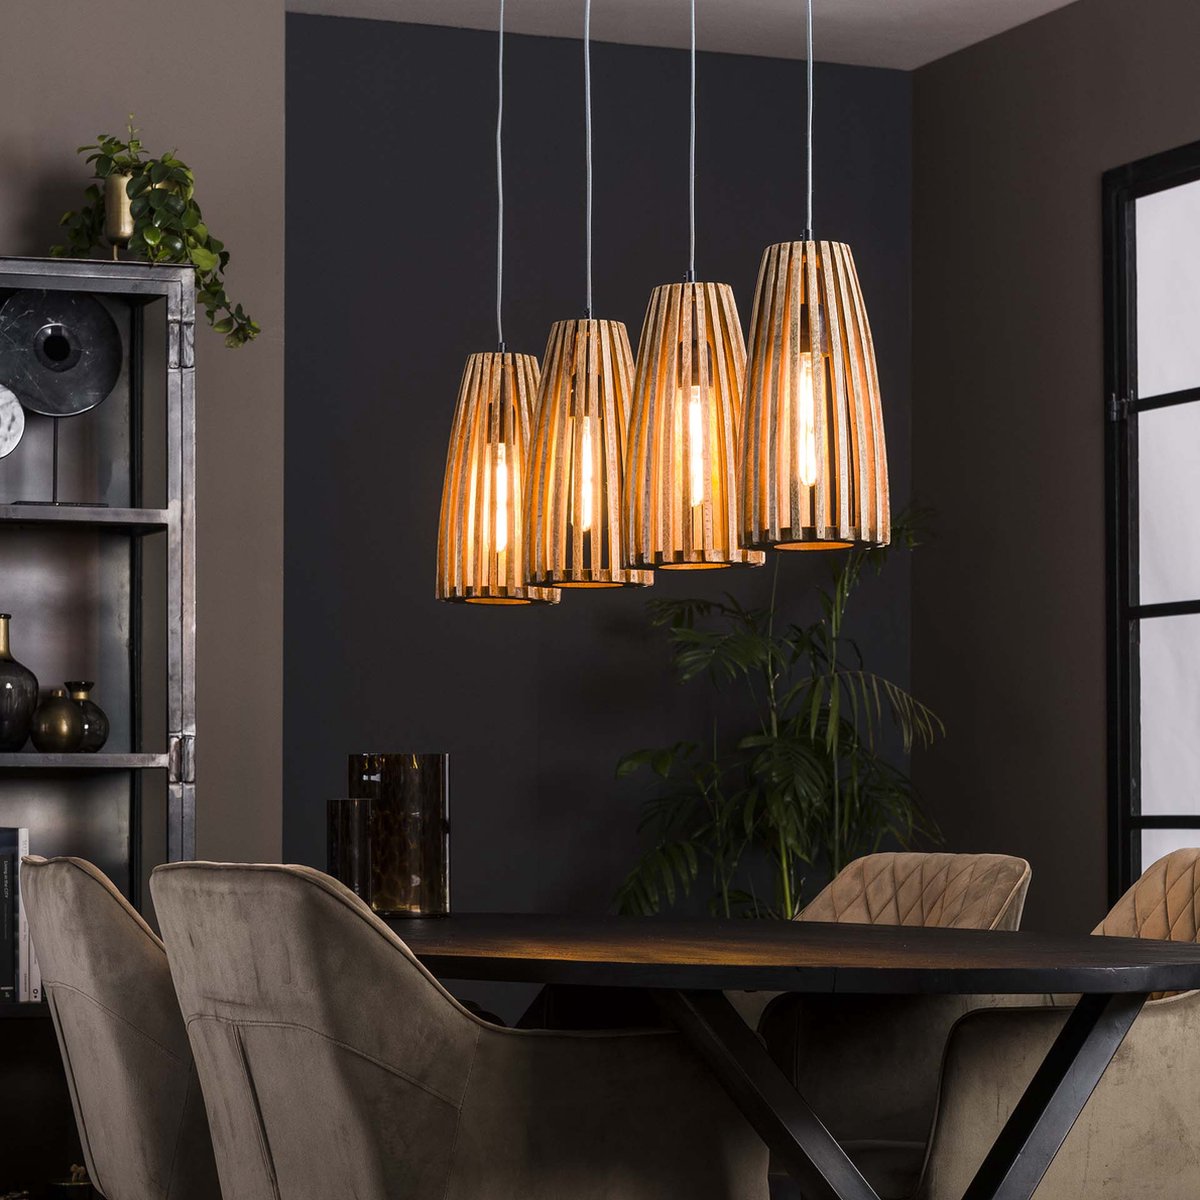 Eettafel hanglamp | 4 lichts | 135 x 20 x 150 cm | mangohout / metaal | bruin / charcoal | modern / landelijk design